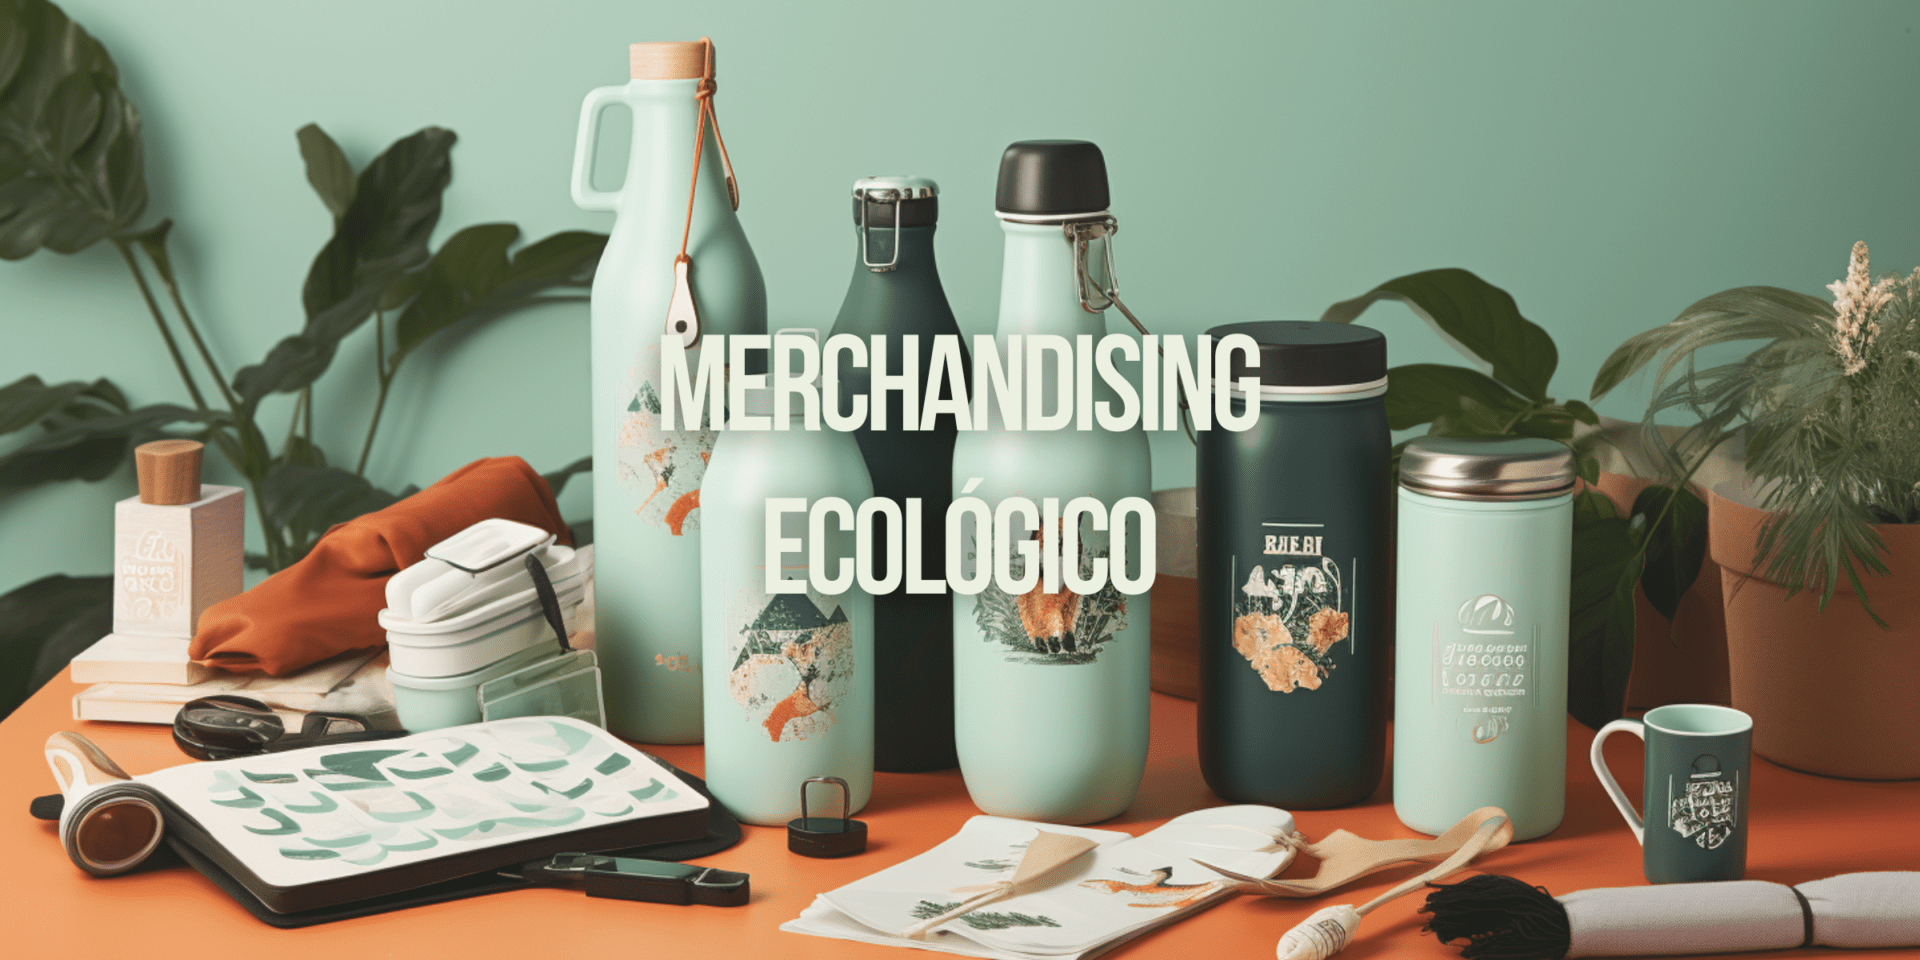 Objectos de Merchandising ecológicos y personalizados de Wasteless Group